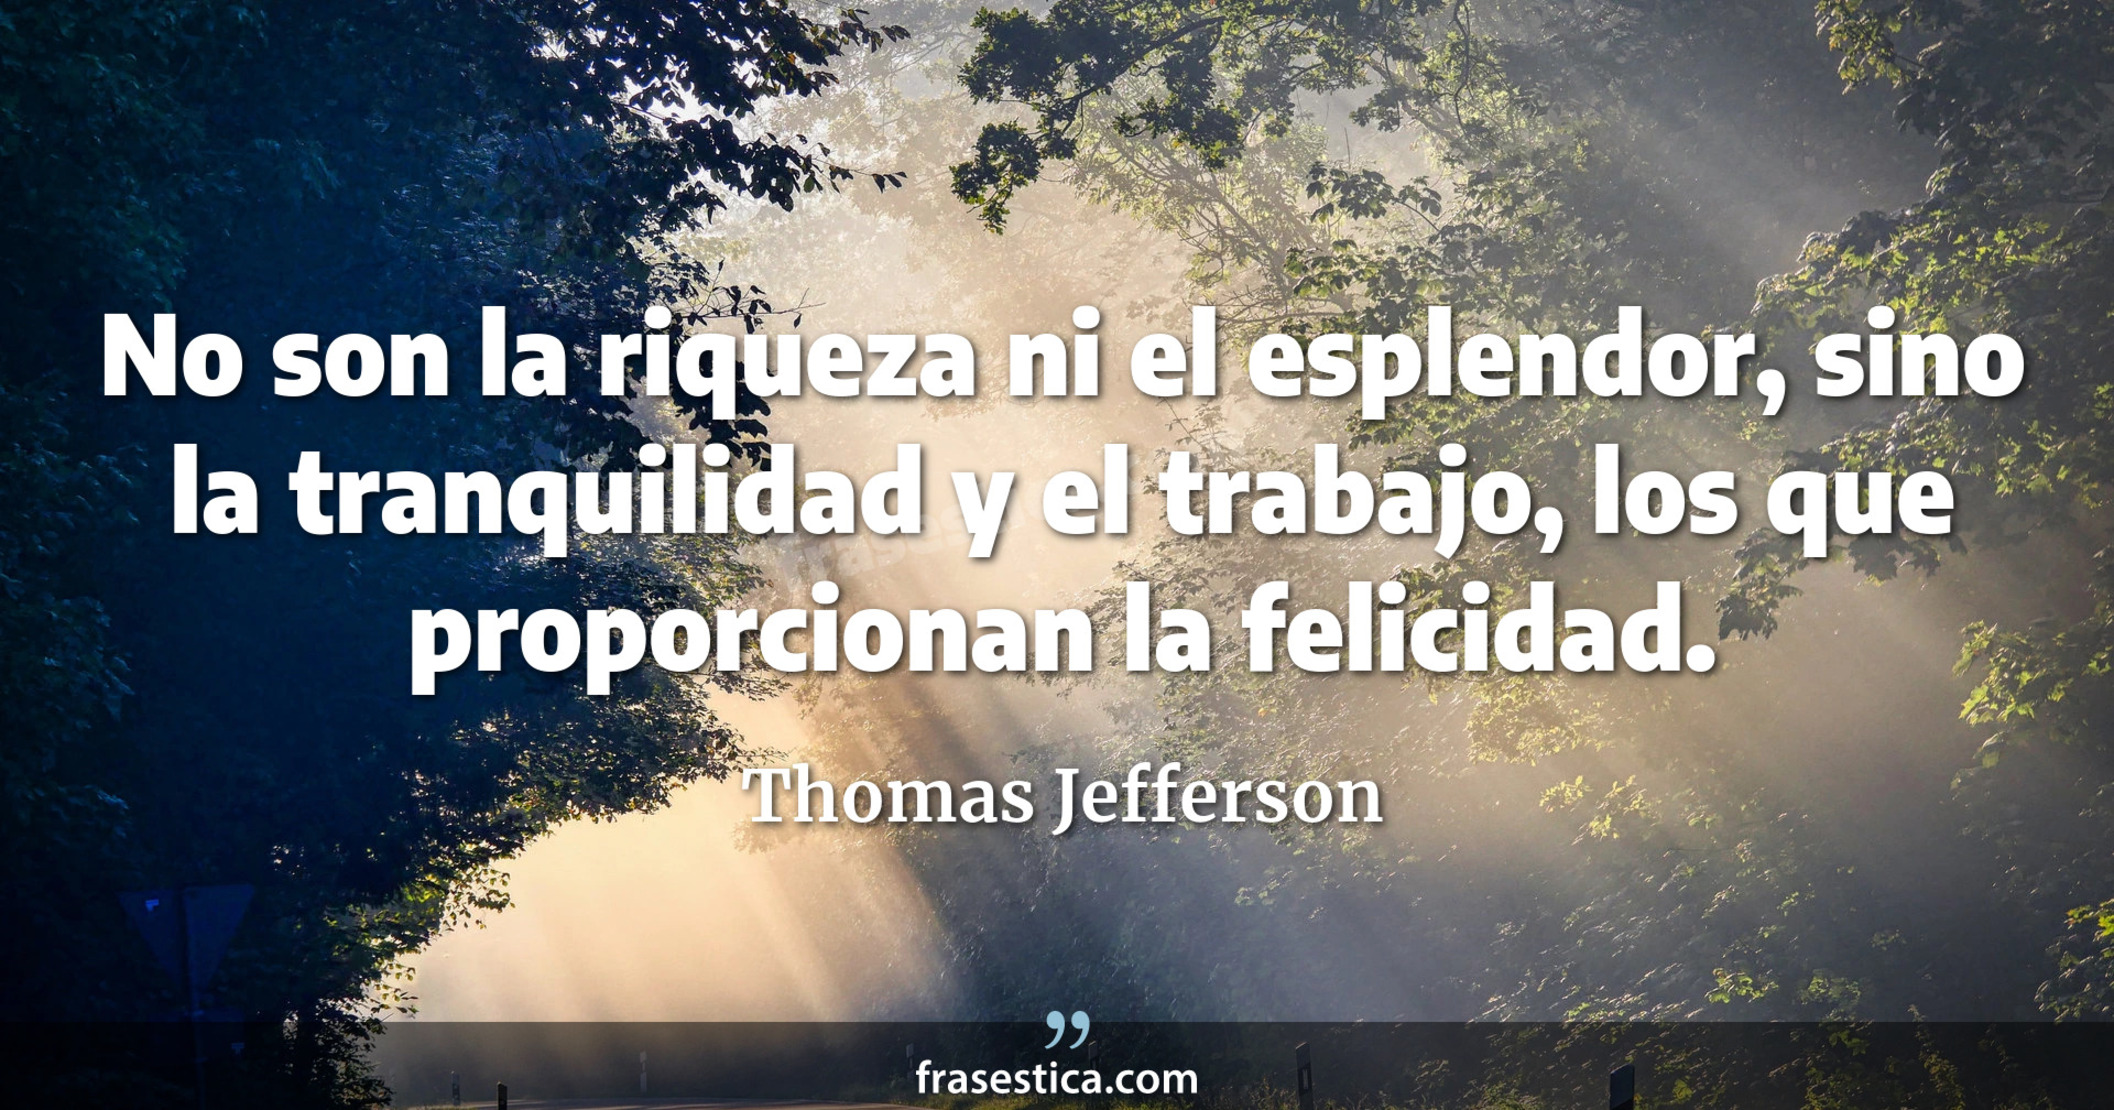 No son la riqueza ni el esplendor, sino la tranquilidad y el trabajo, los que proporcionan la felicidad. - Thomas Jefferson